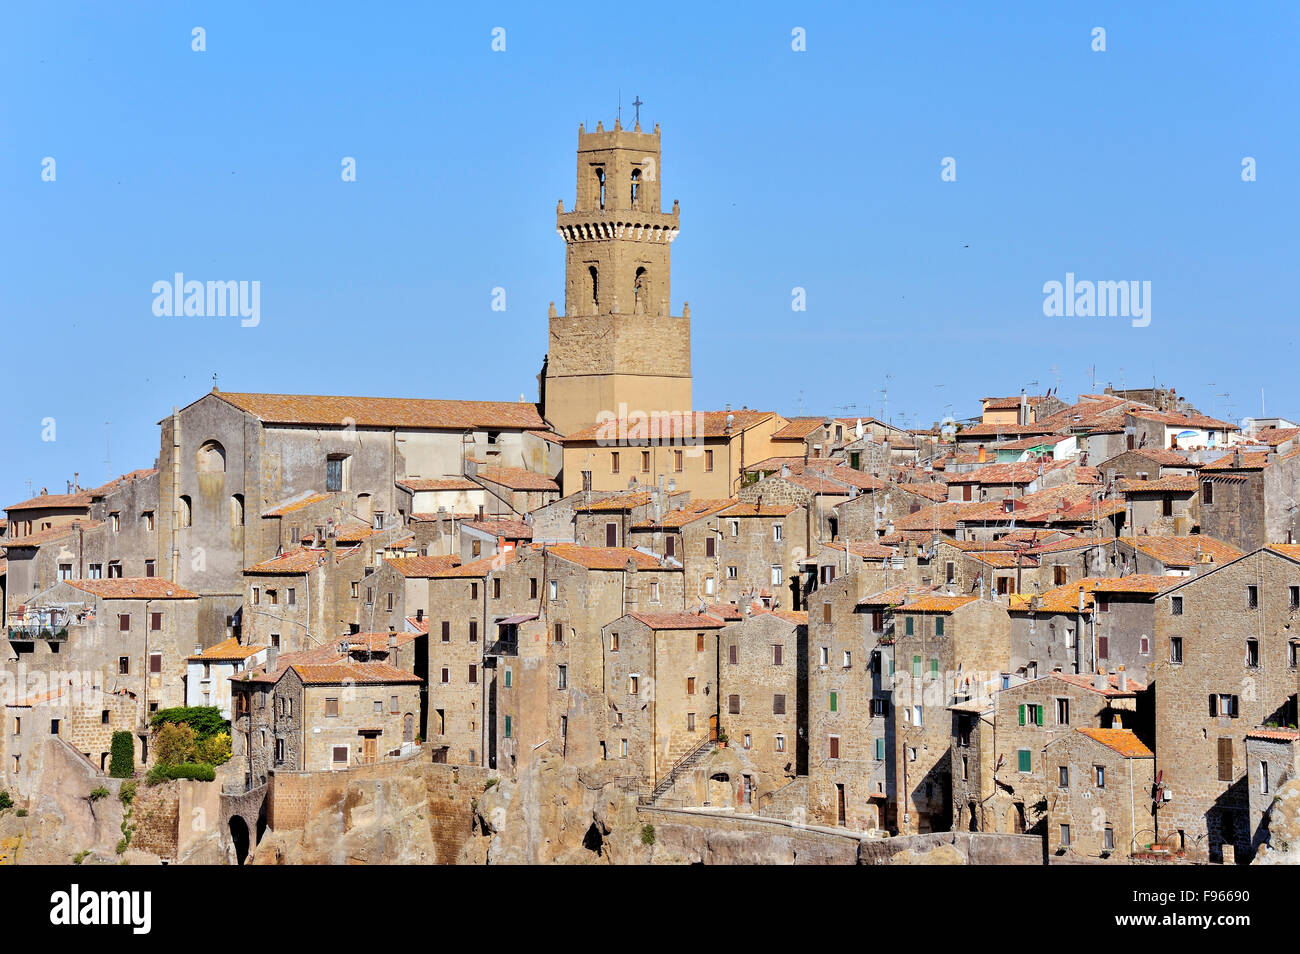 Pitigliano, città del medioevo, in provincia di Grosseto in Toscana, edifici di pietra di tufo, Toscana, Italia Foto Stock